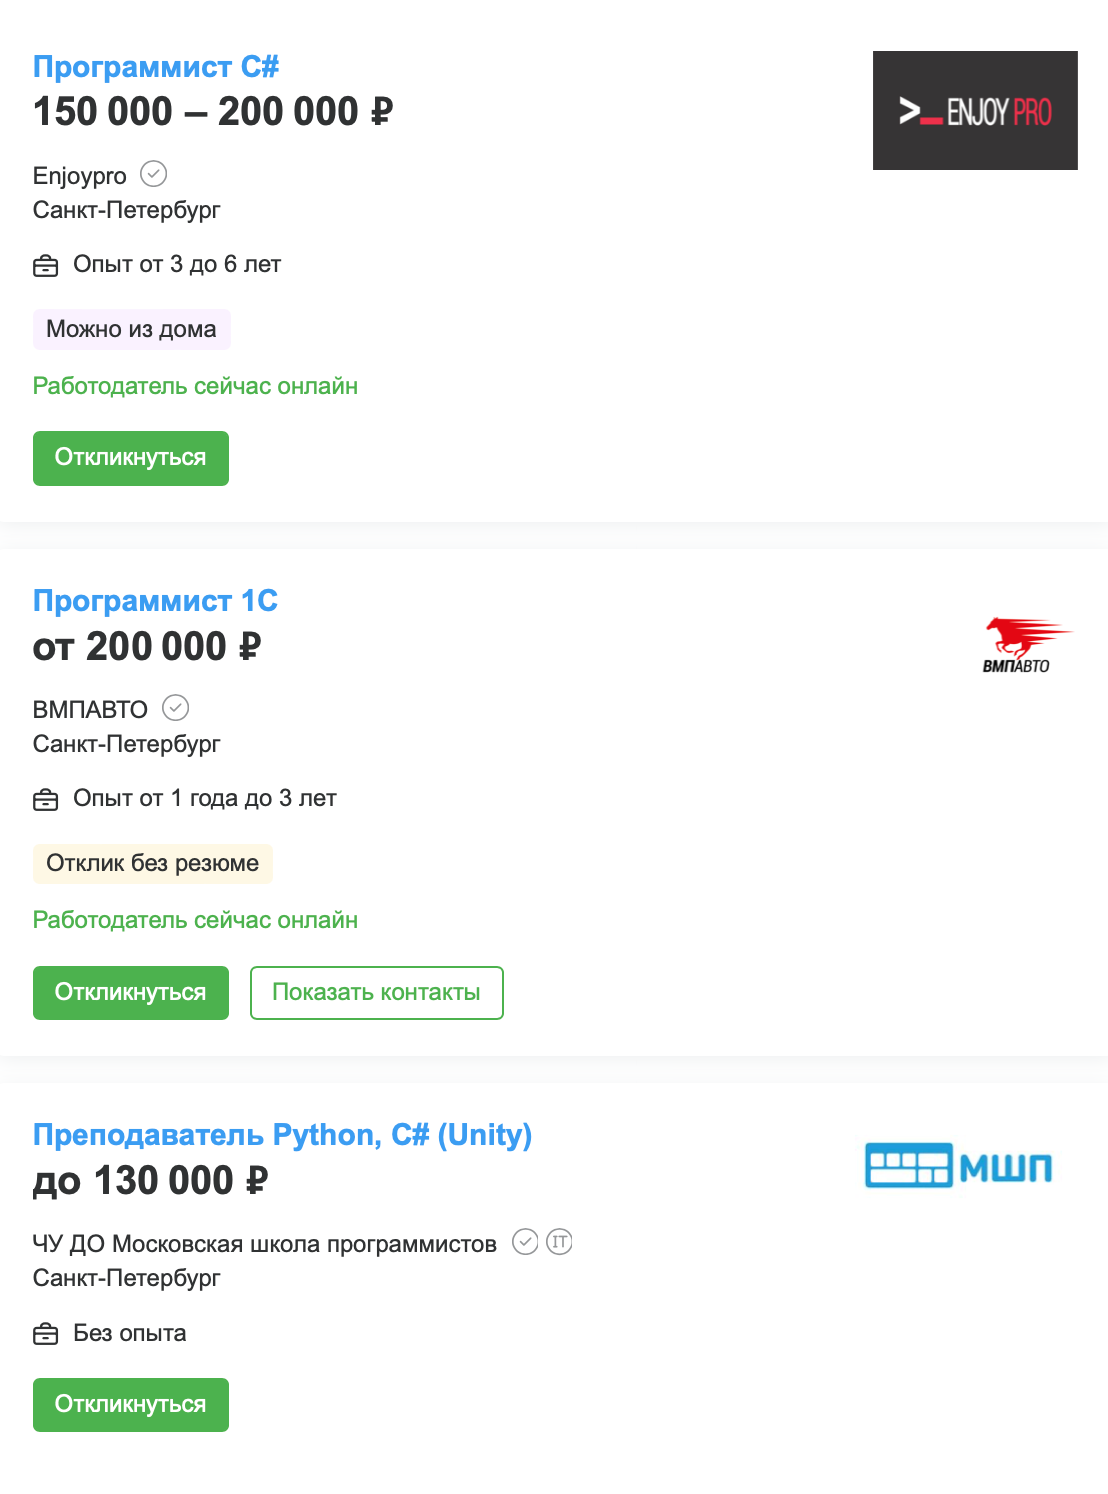 Зарплата программистов в Санкт-Петербурге по данным hh.ru